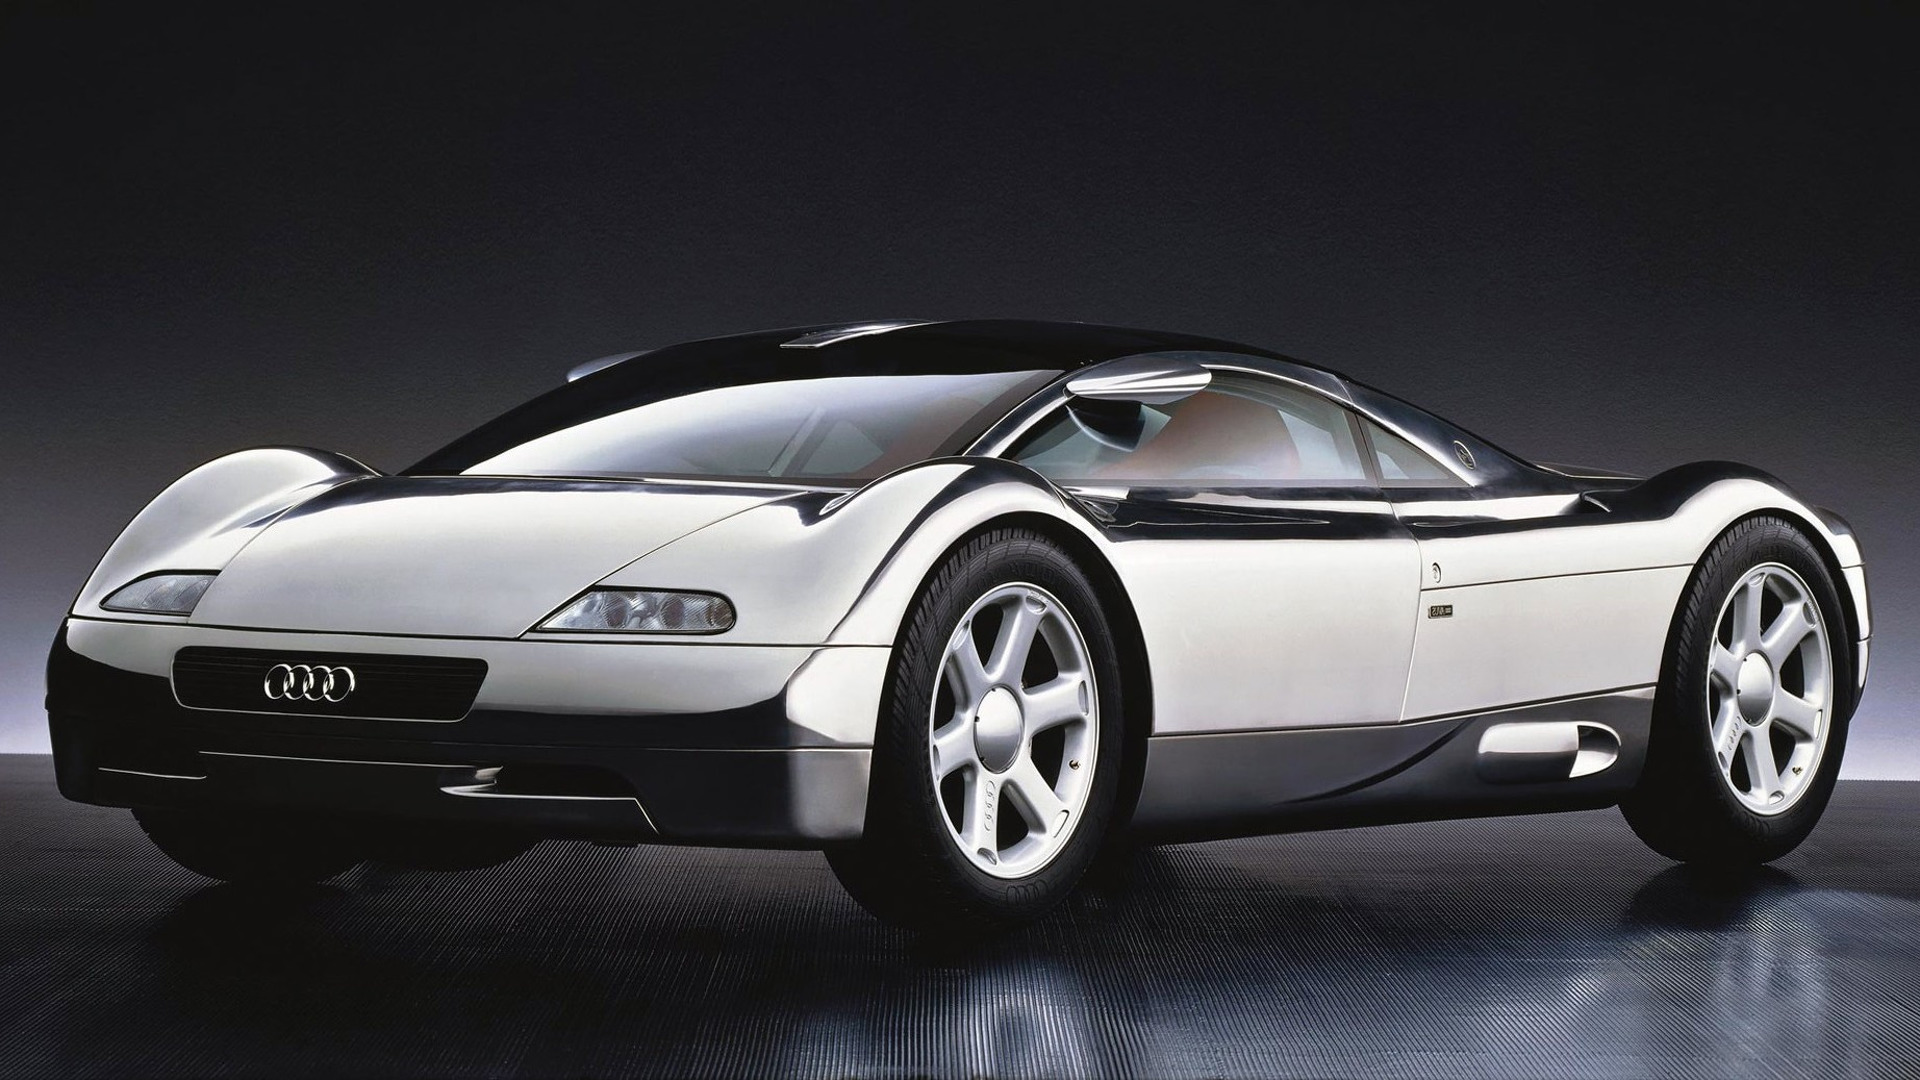 The Audi Avus concept and its unpainted aluminium body.